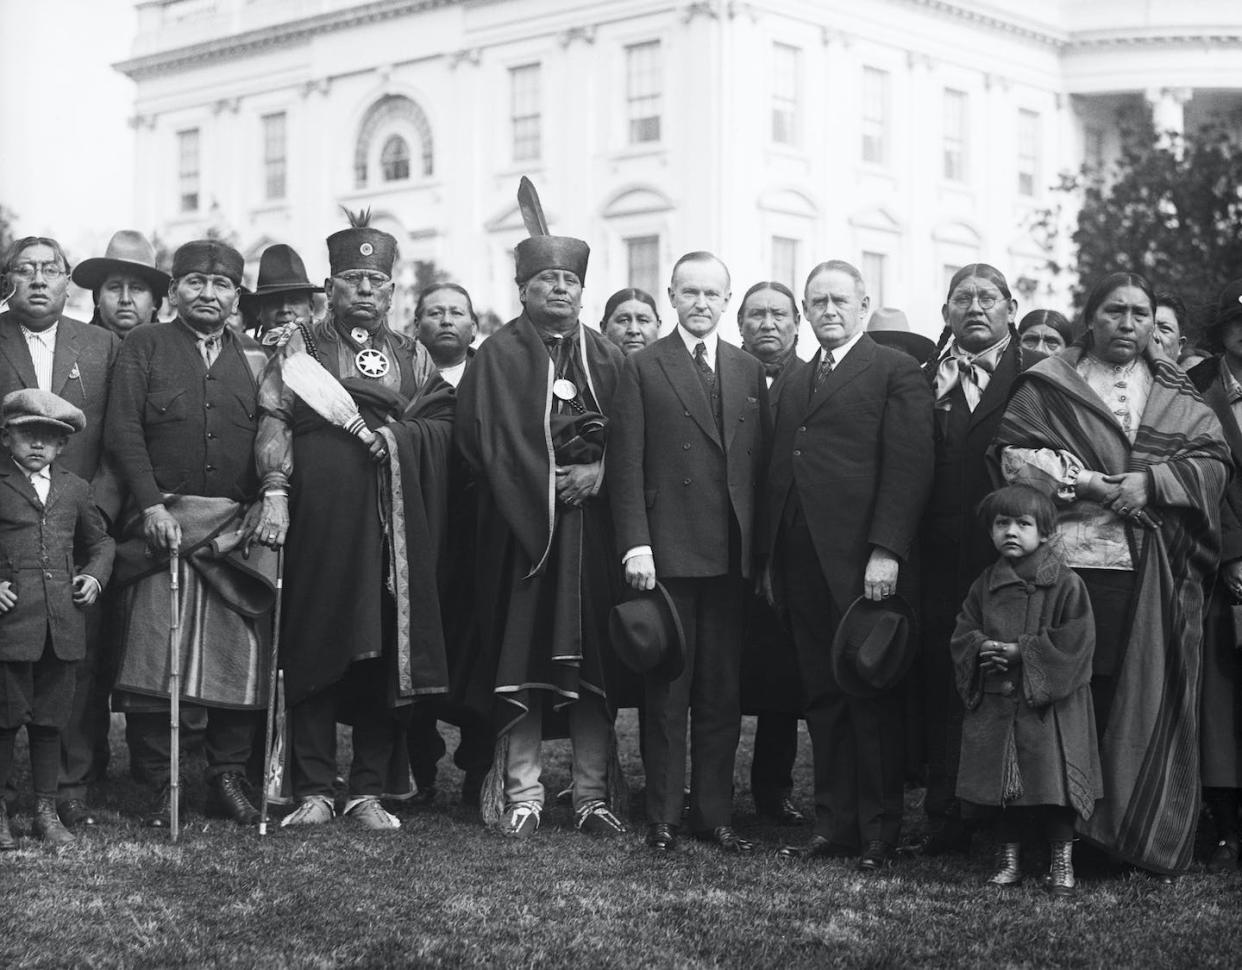 Una delegación Osage con el presidente Calvin Coolidge en la Casa Blanca el 20 de enero de 1924. <a href="https://www.gettyimages.com/detail/news-photo/washington-dc-osage-indians-in-washington-regarding-their-news-photo/514689540" rel="nofollow noopener" target="_blank" data-ylk="slk:Bettman via Getty Images;elm:context_link;itc:0;sec:content-canvas" class="link ">Bettman via Getty Images</a>